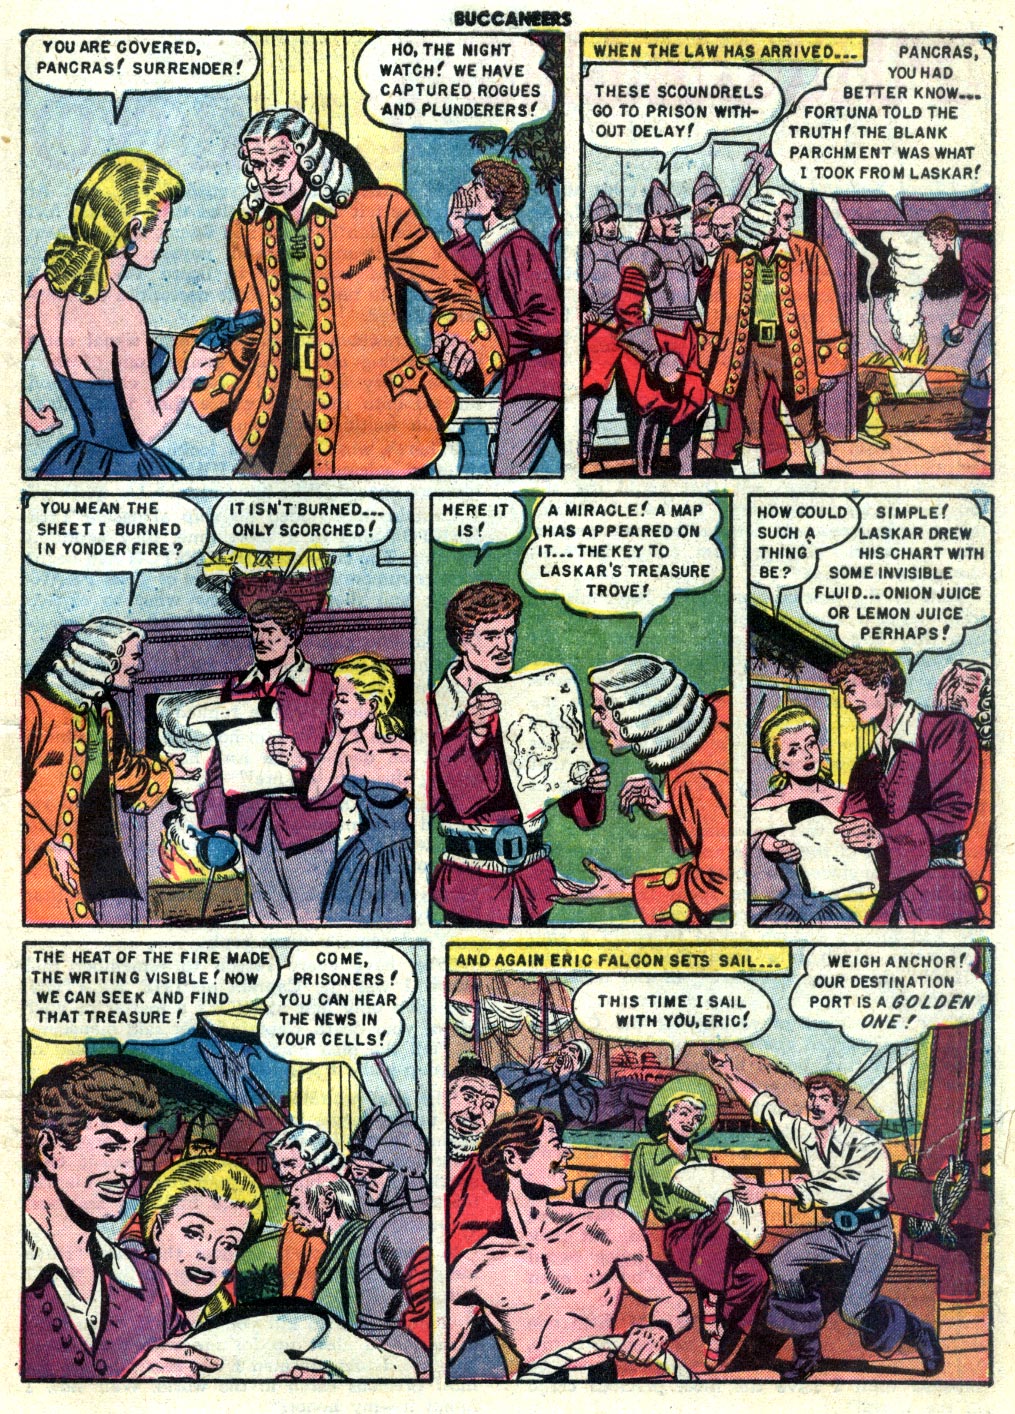 Read online Buccaneers comic -  Issue #23 - 25